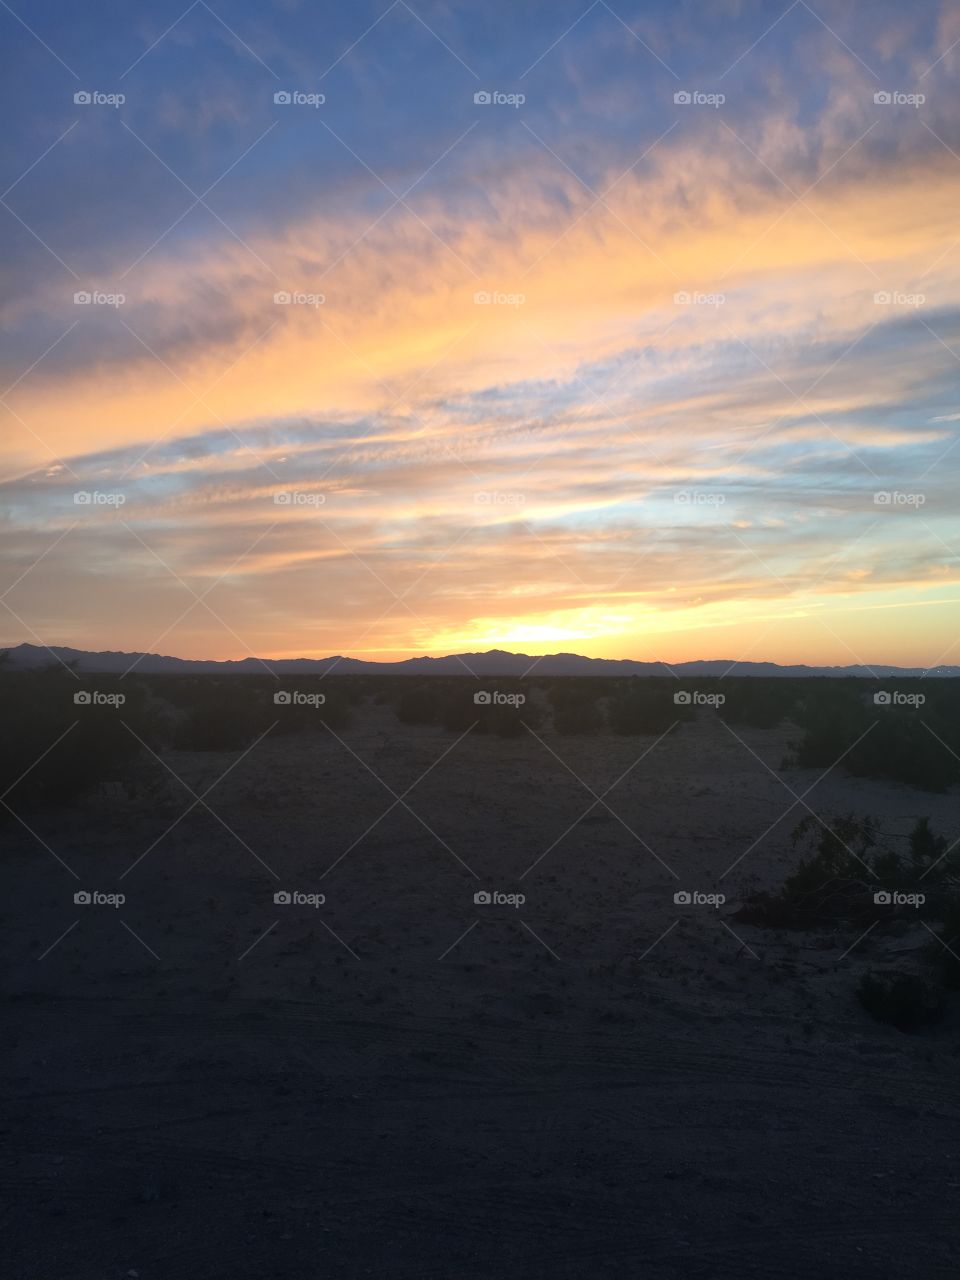 Desert sunset 